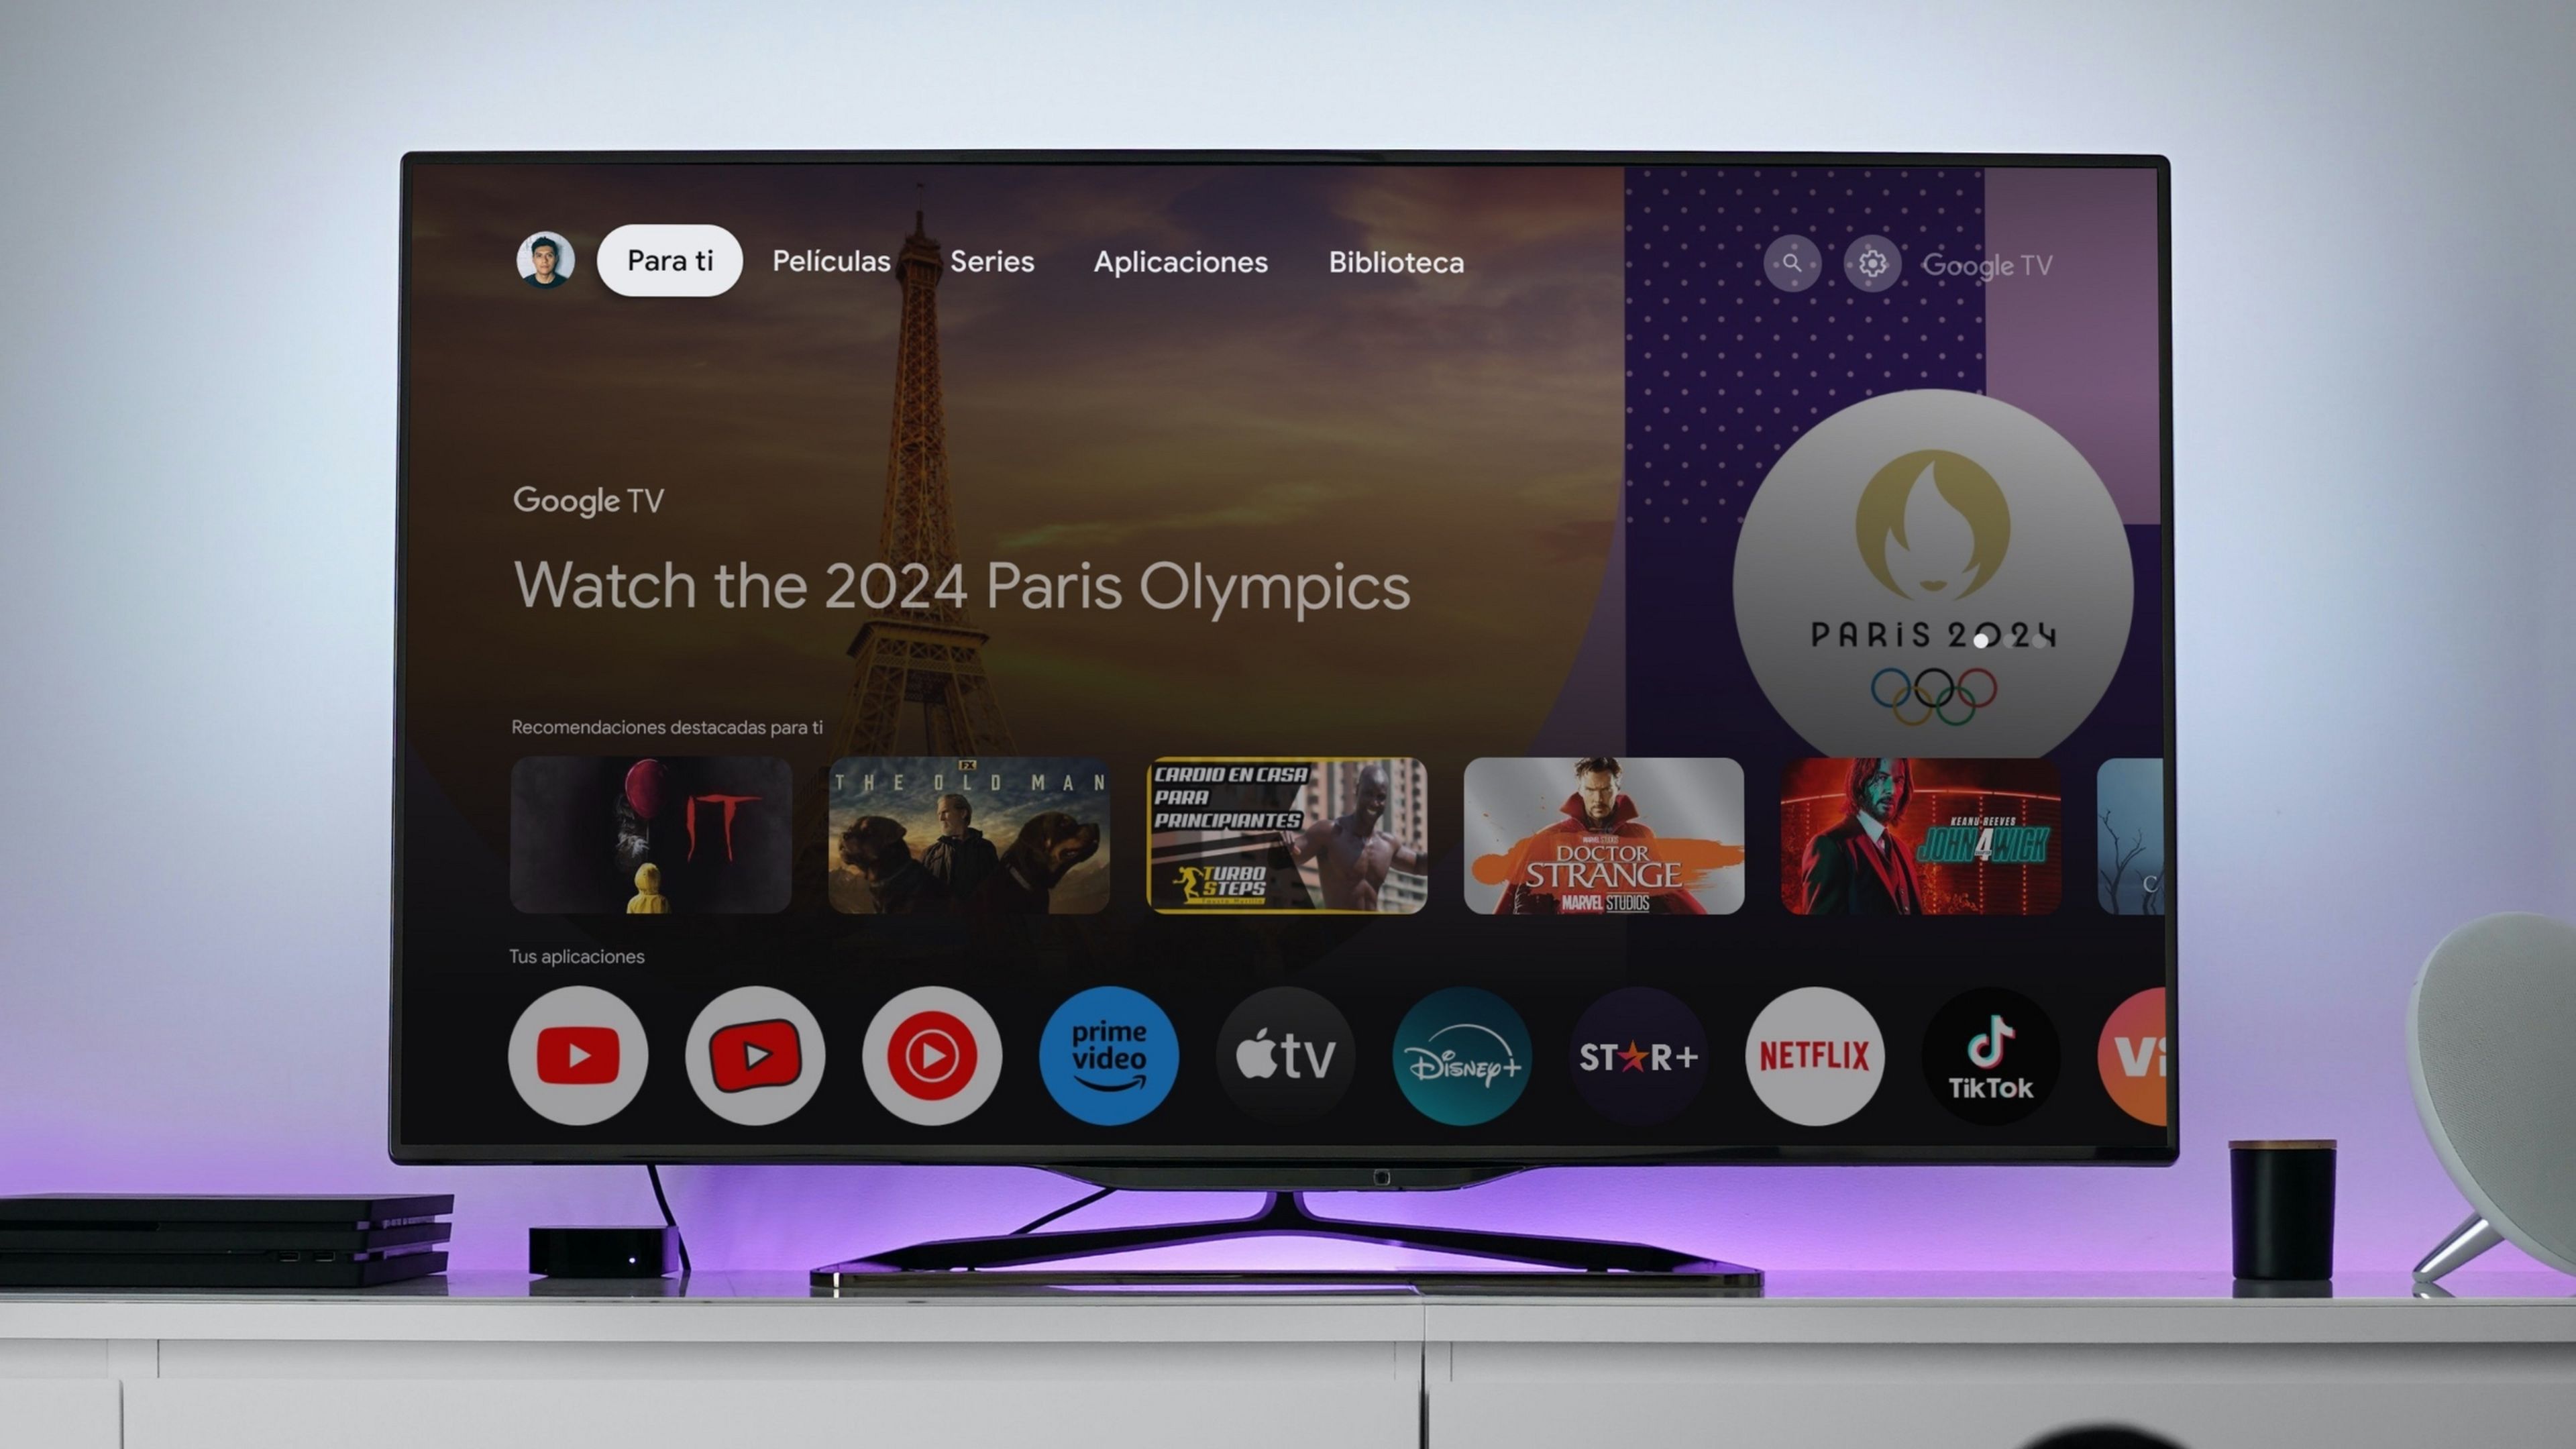 La función que tienes que activar para simplificar tu Google TV